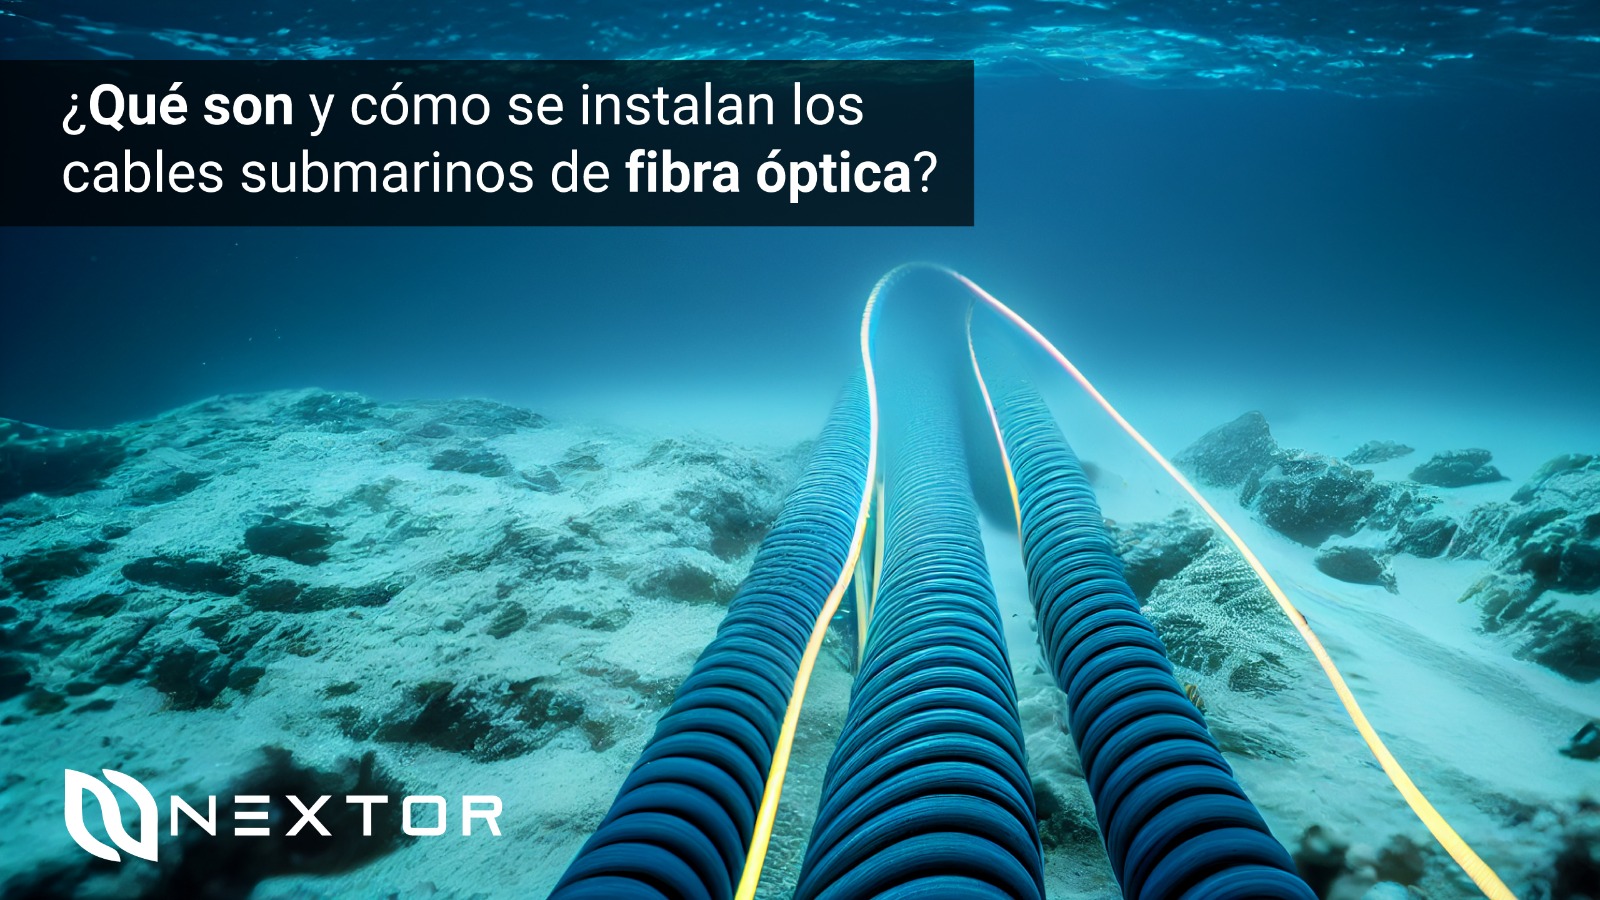 Qué son y cómo se instalan cables submarinos de fibra óptica? - Nextor IO